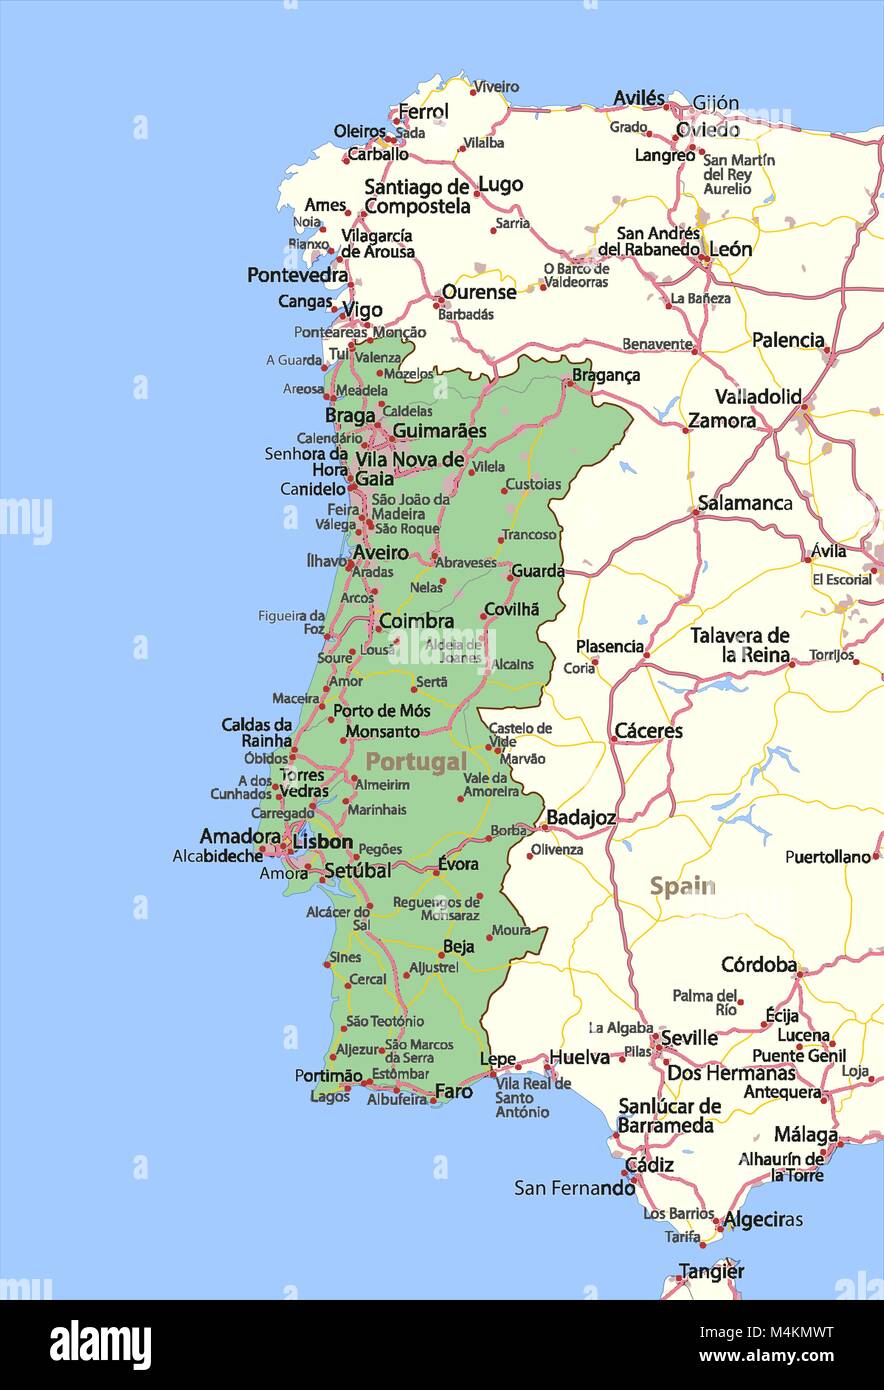 Mappa di Portogallo. Mostra i confini, zone urbane, nomi di località e strade. Le etichette in inglese dove possibile. Proiezione: proiezione di Mercatore Sferica. Illustrazione Vettoriale